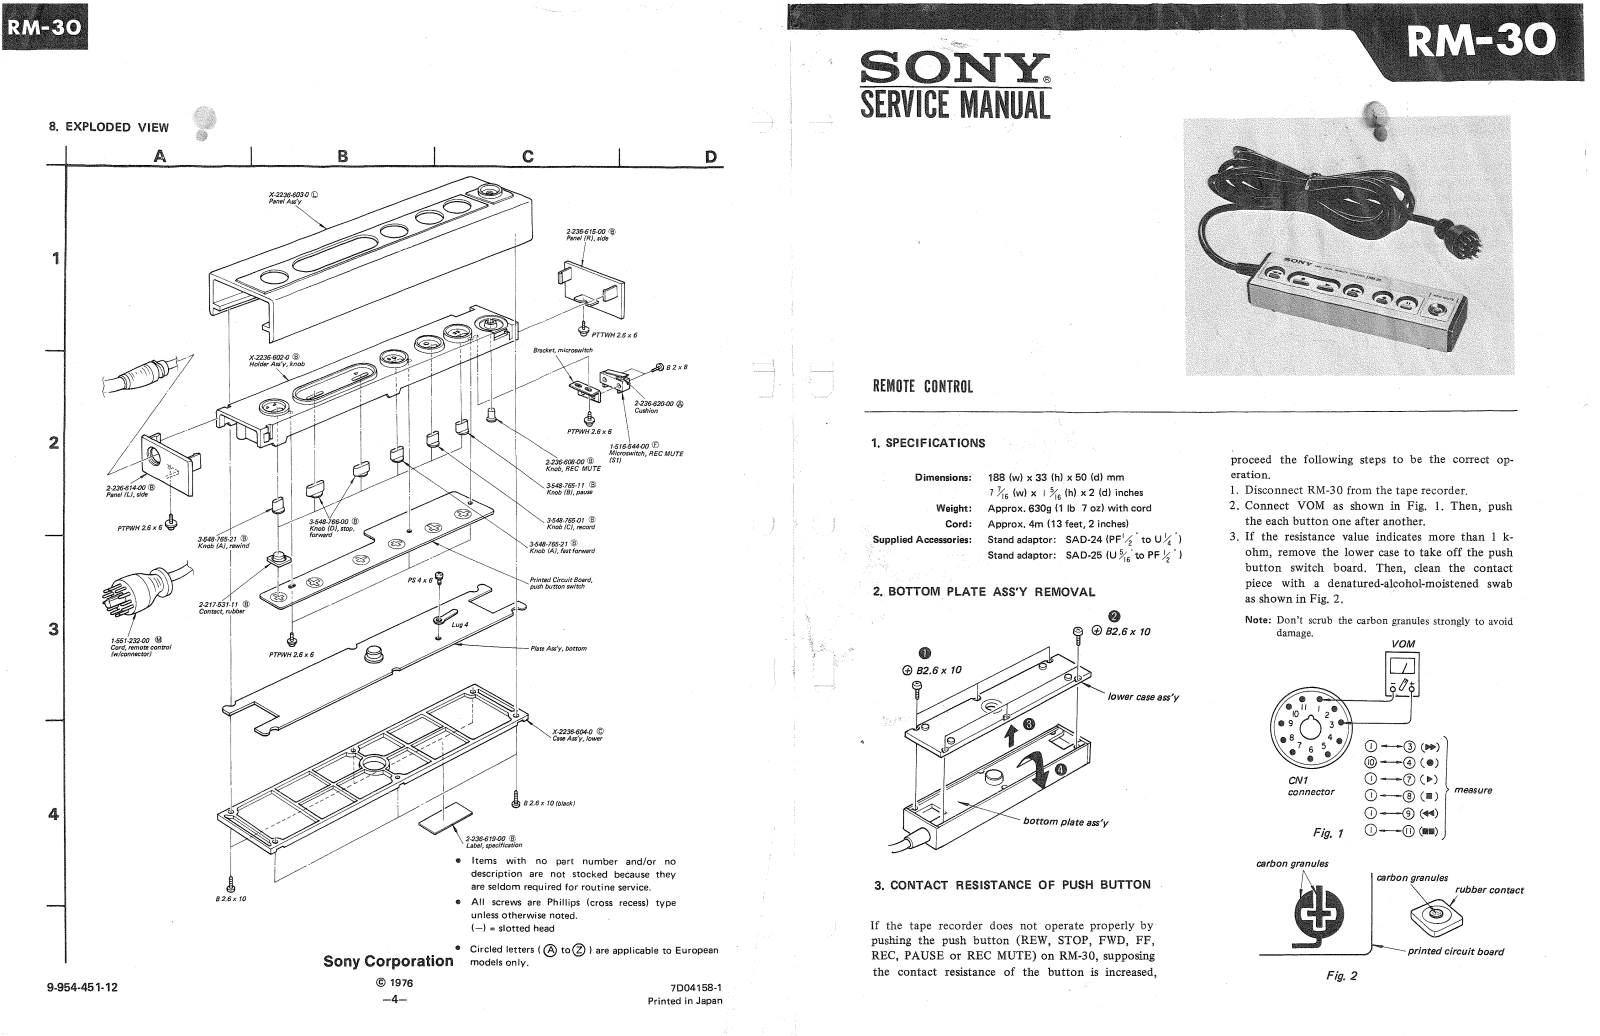 Sony RM-30 Service manual